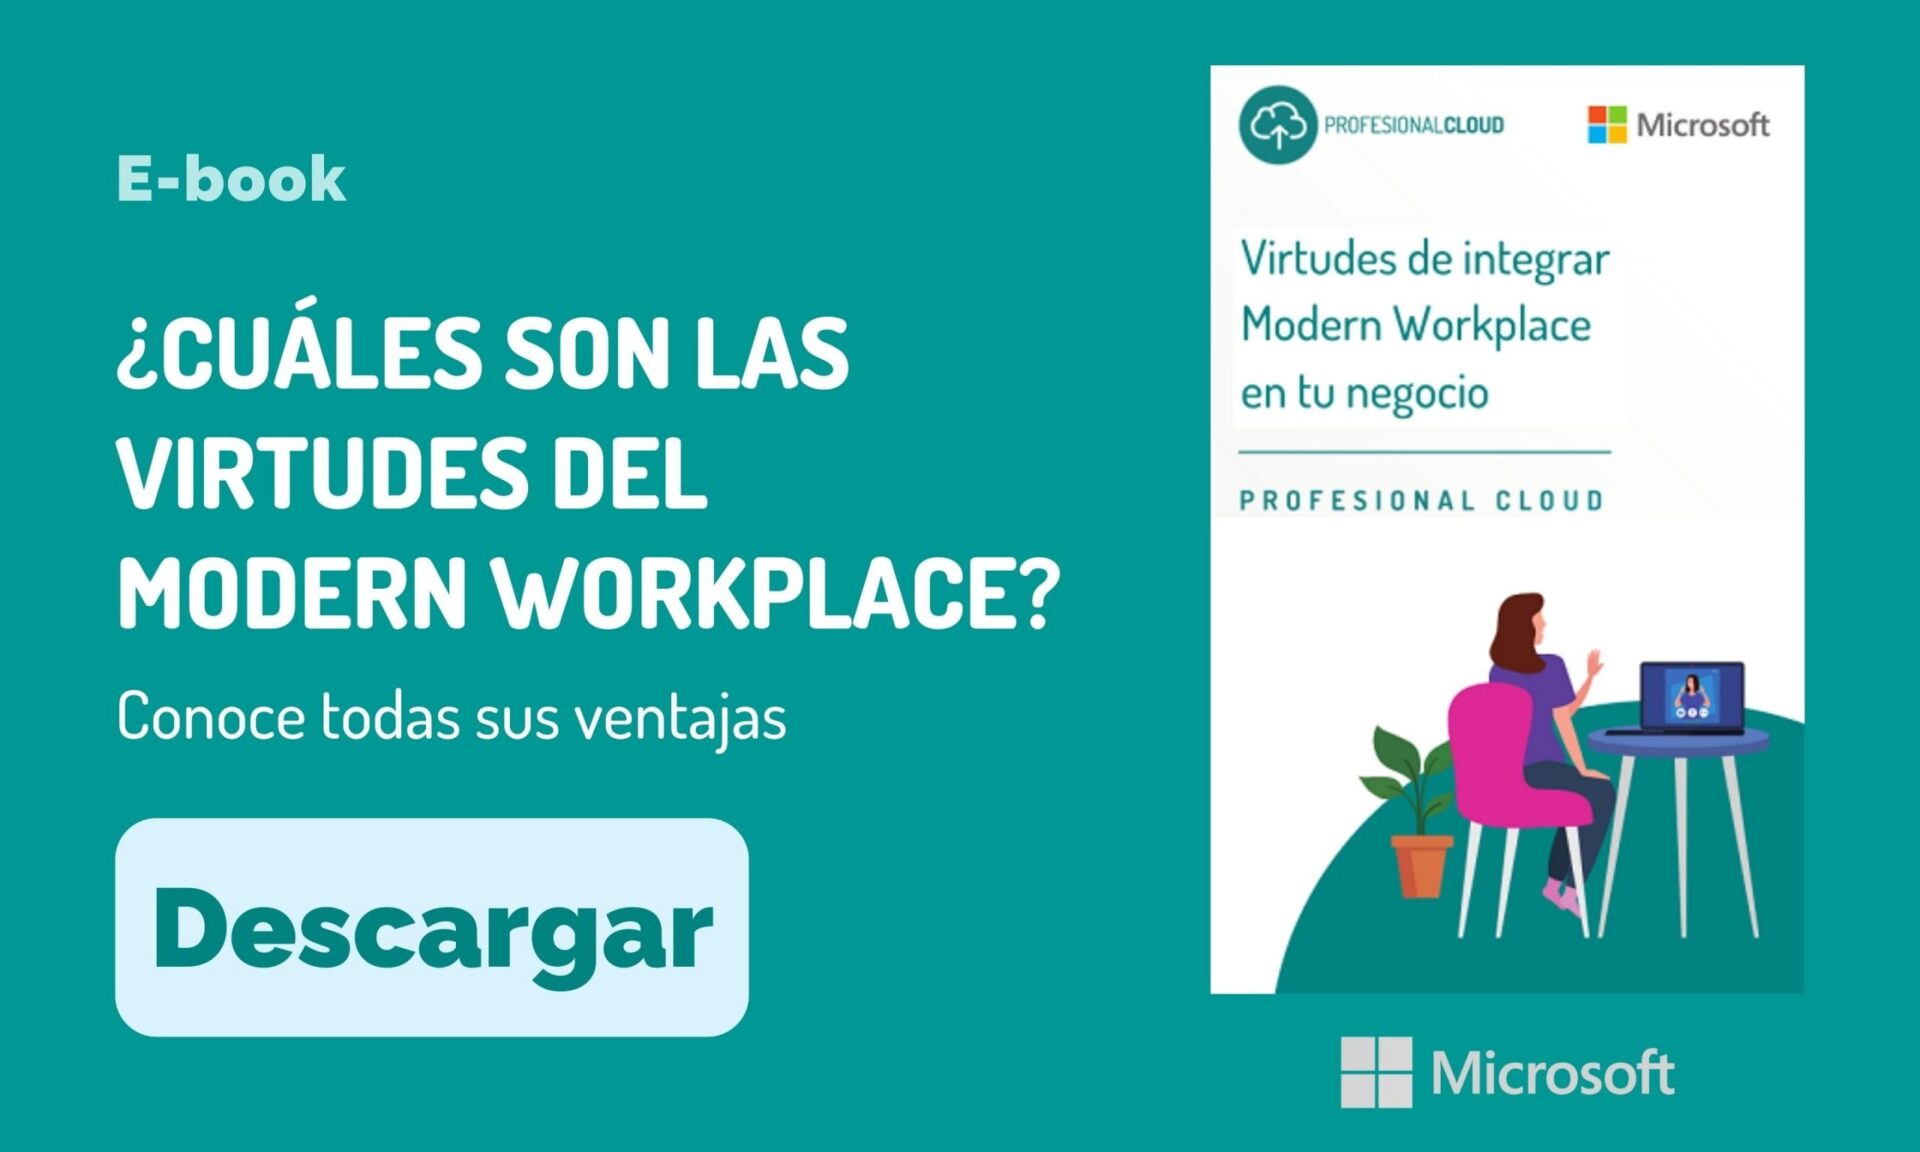 Modern Workplace: ProfesionalCloud te ayuda a implementar esta solución de Microsoft